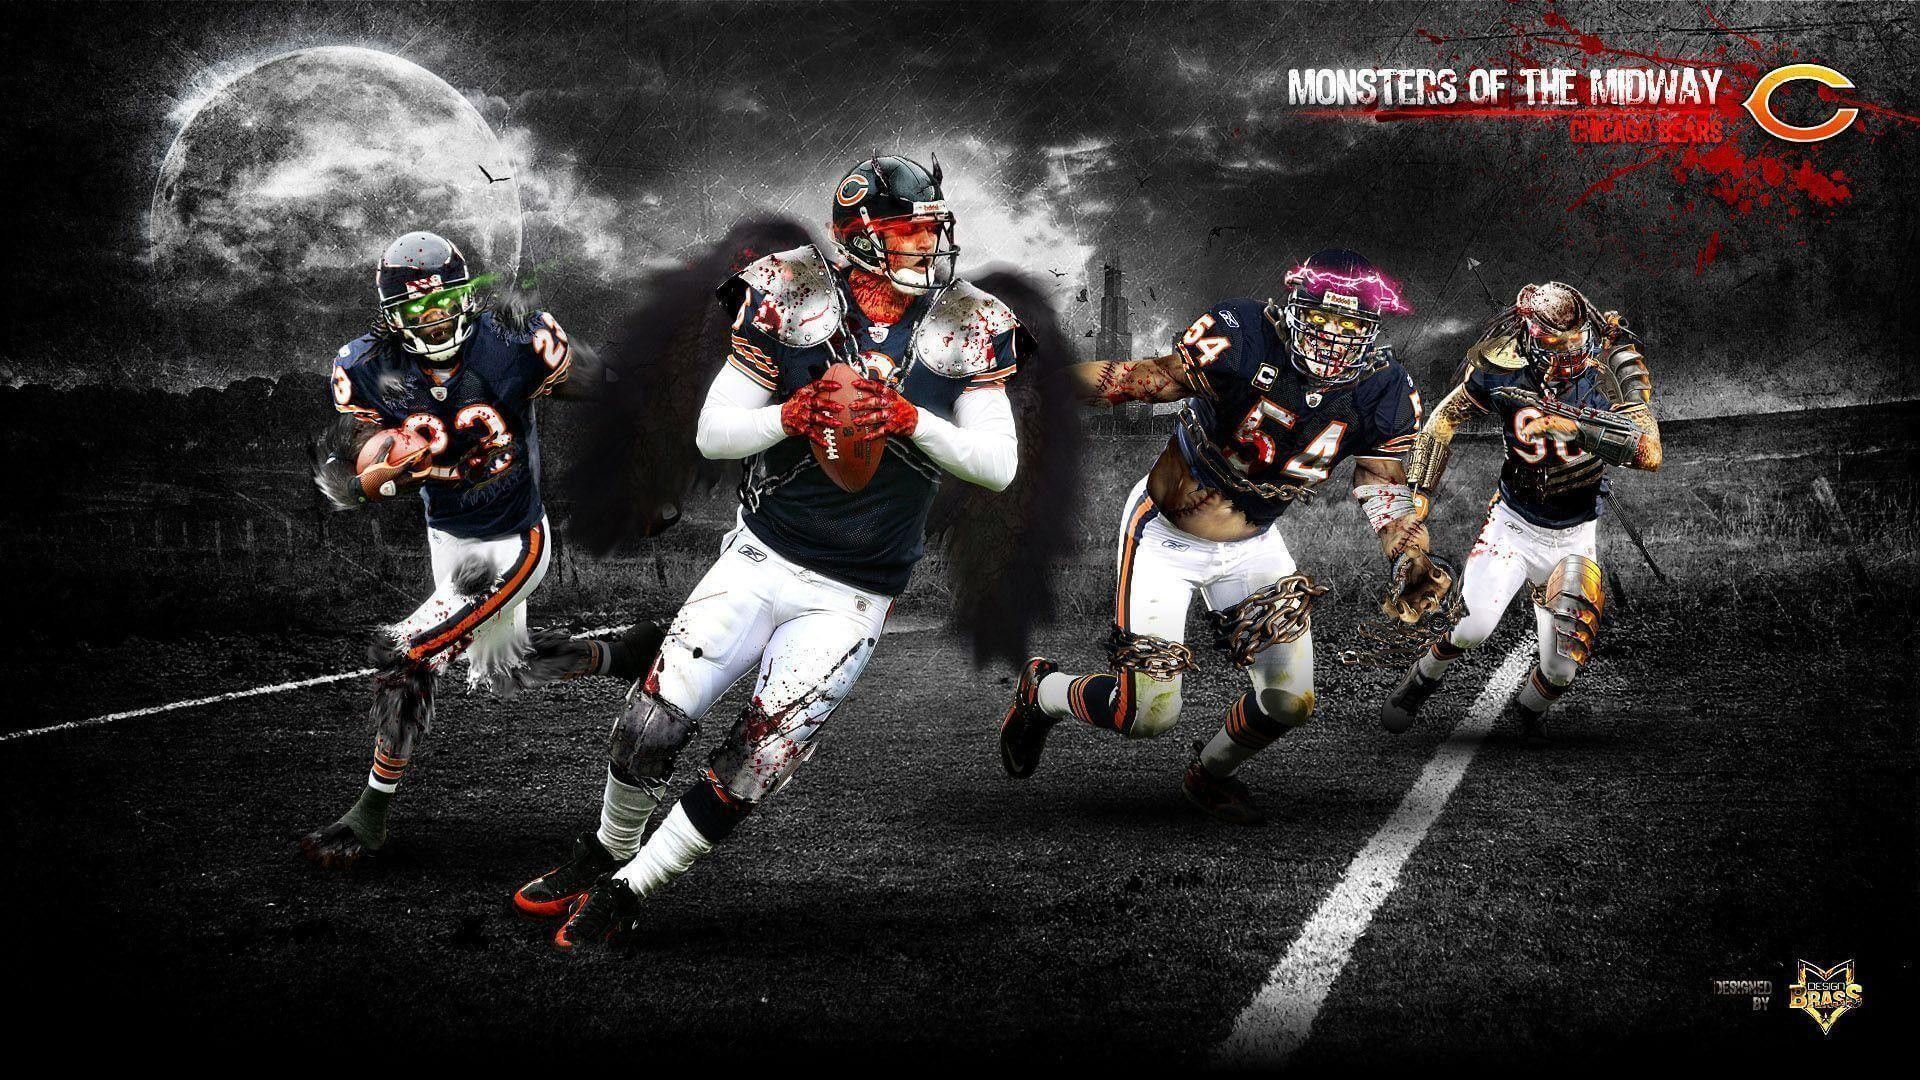 Bears For PC Wallpaper NFL Football Wallpaper 4K. Nfl football wallpaper, Football wallpaper, Chicago bears wallpaper